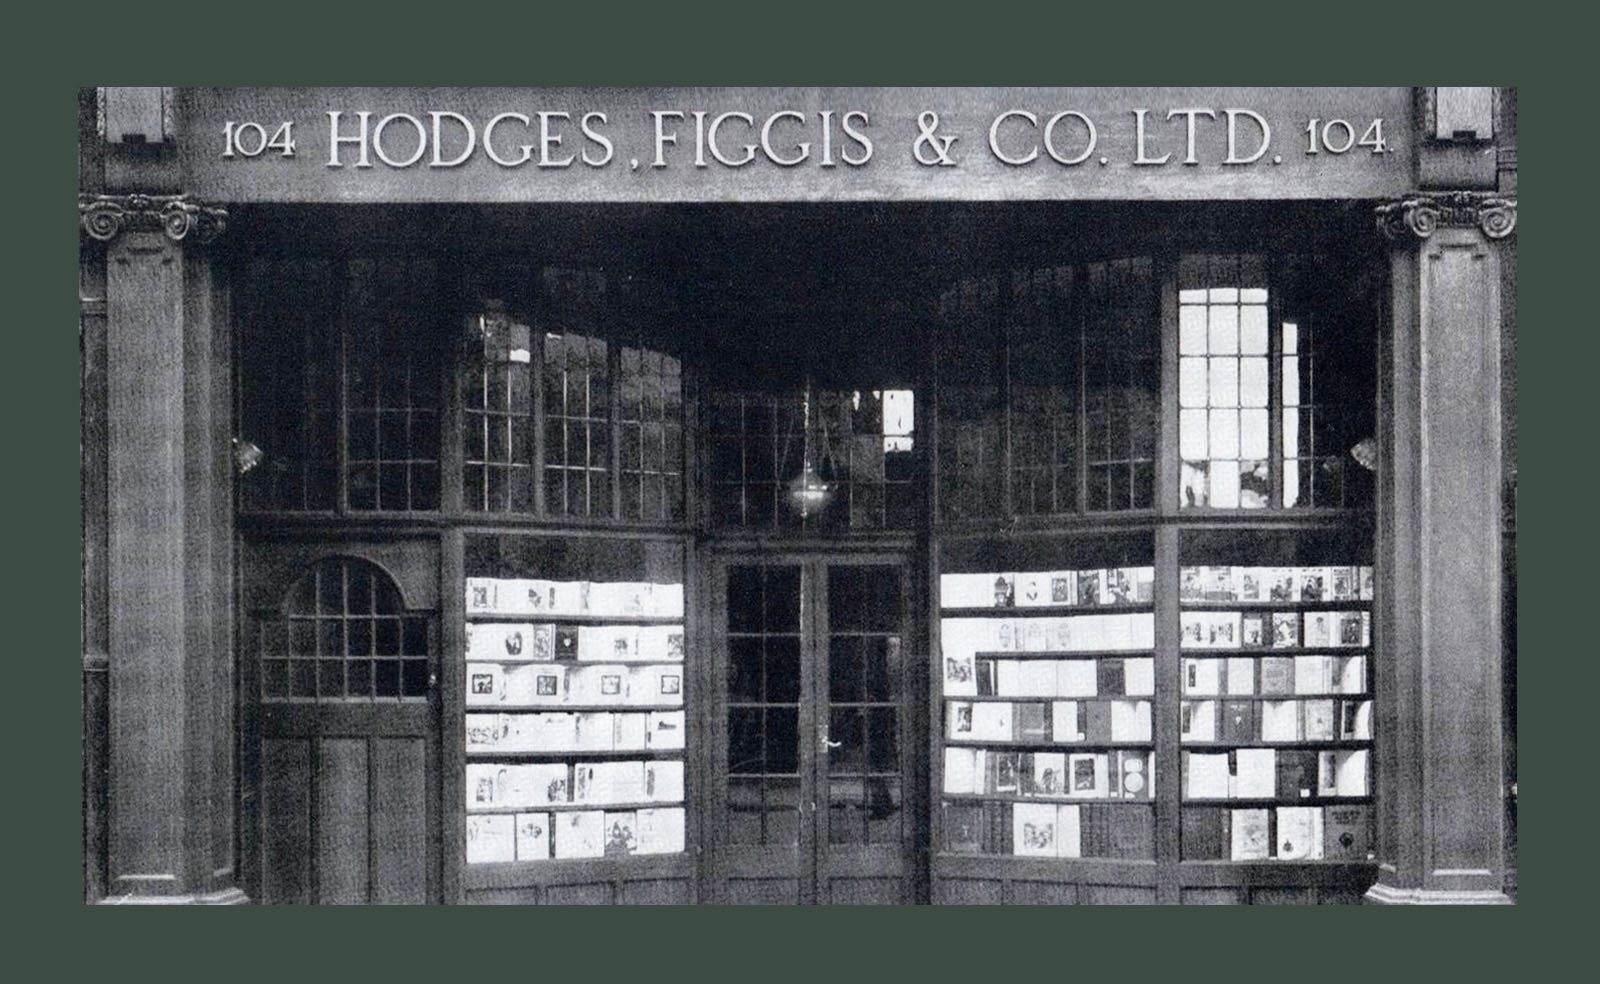 Hodges Figgis circa 1900